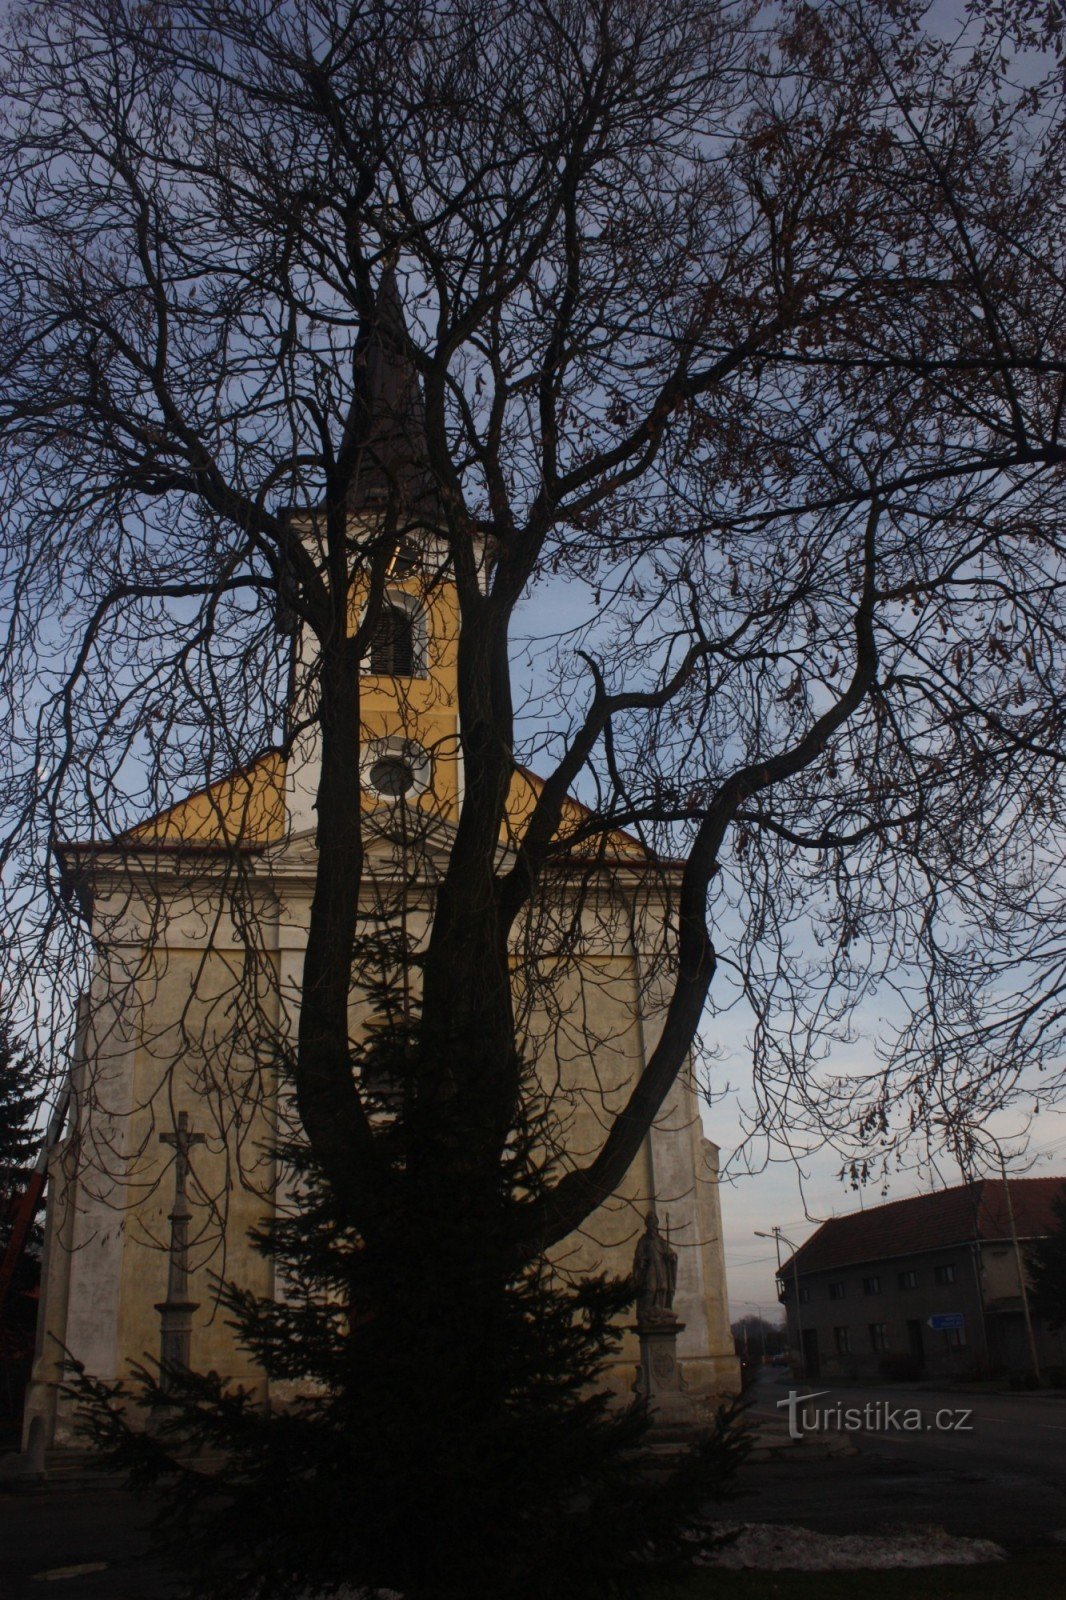 Ренесансні надгробки Підштацького з Прусіновіце в костелі св. Міхал у Врхославіце